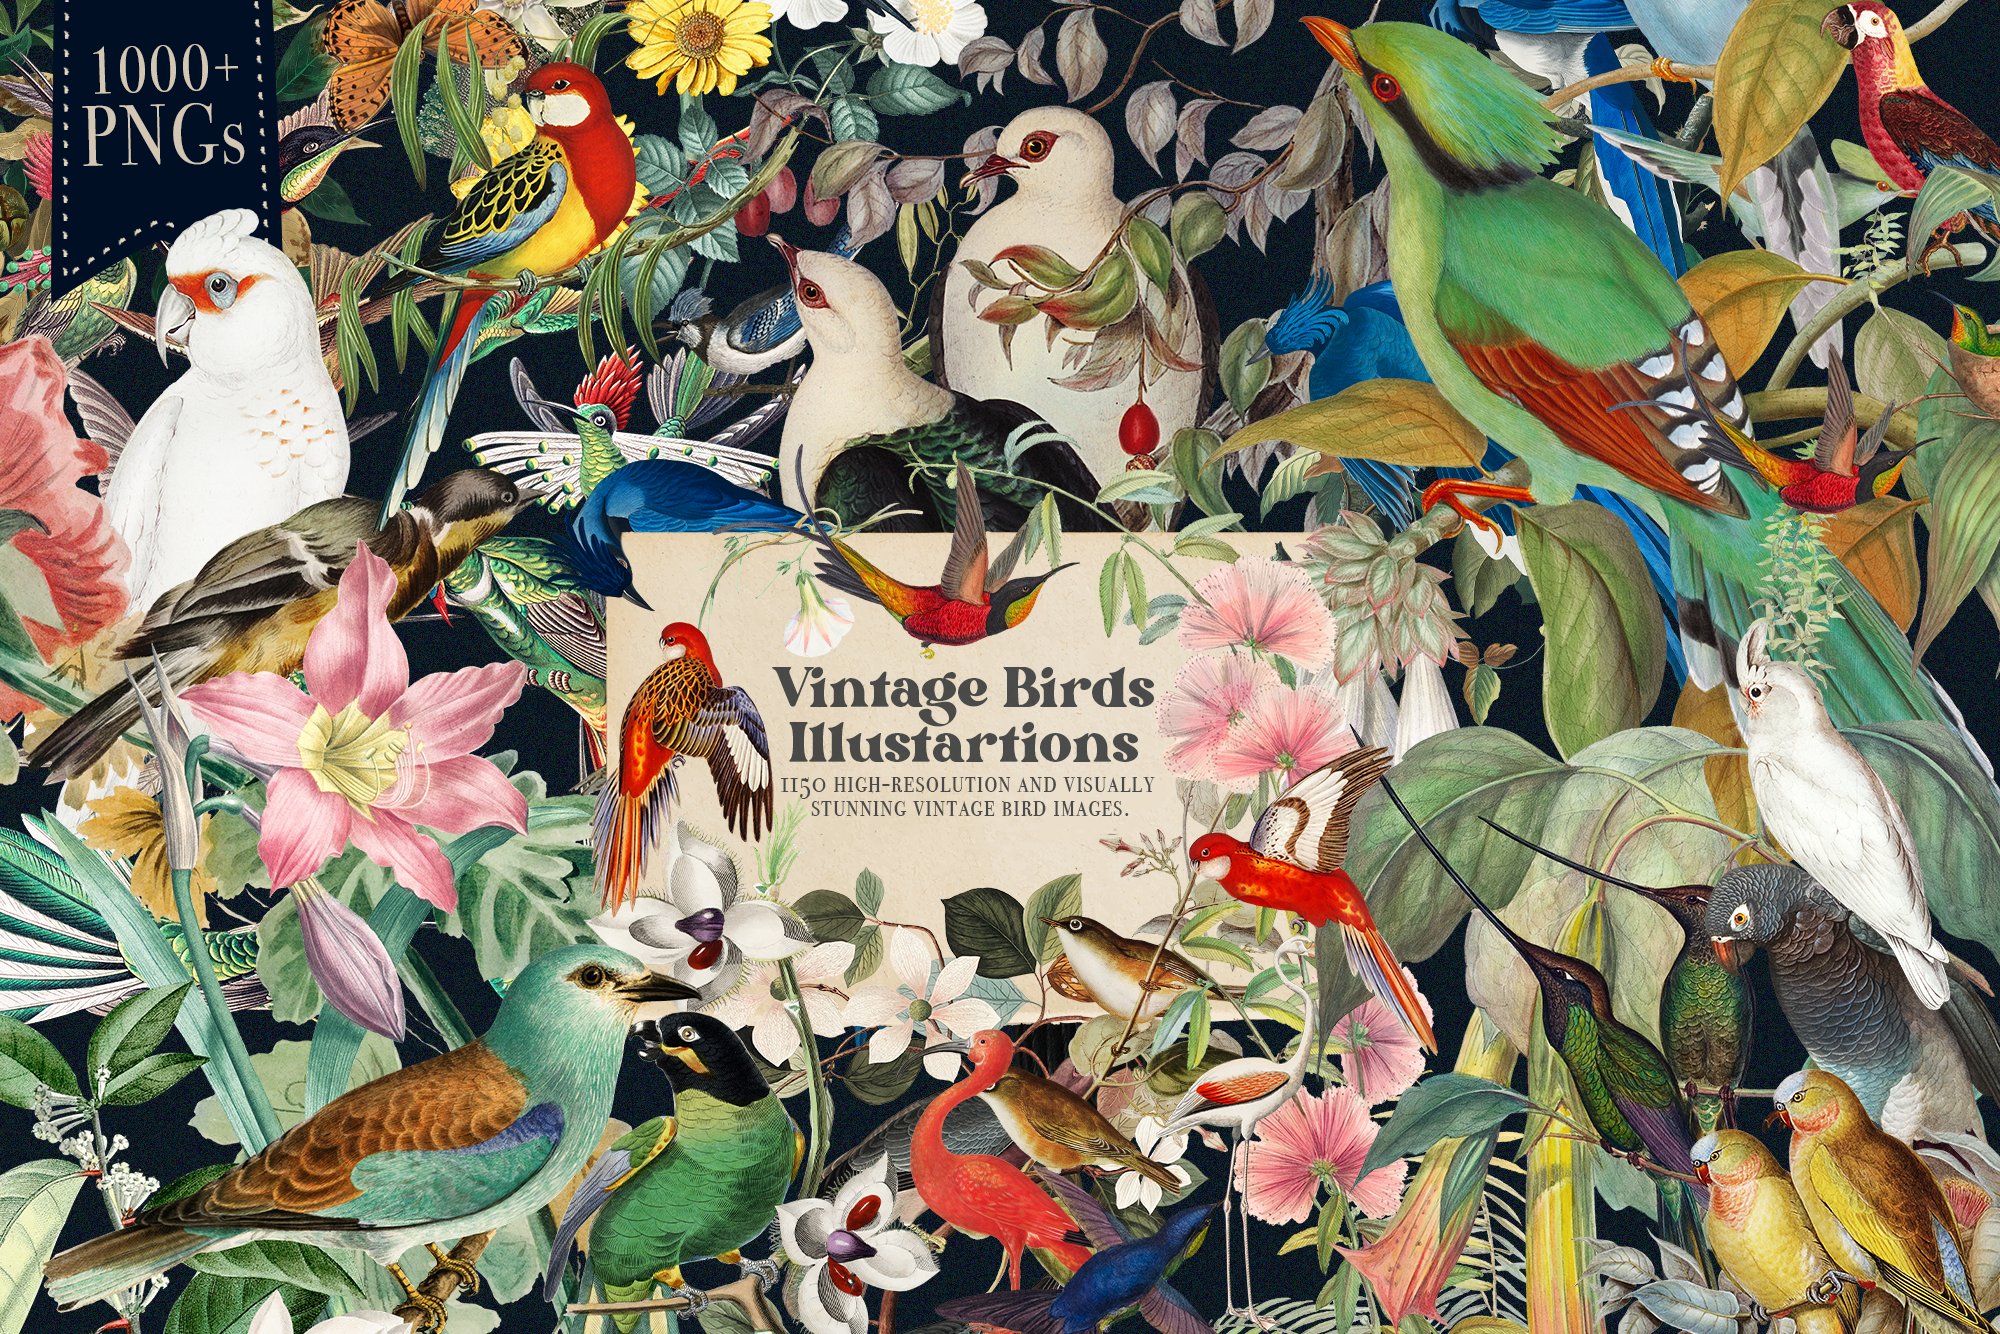 1150 Vintage Bird Illustratins cover image.